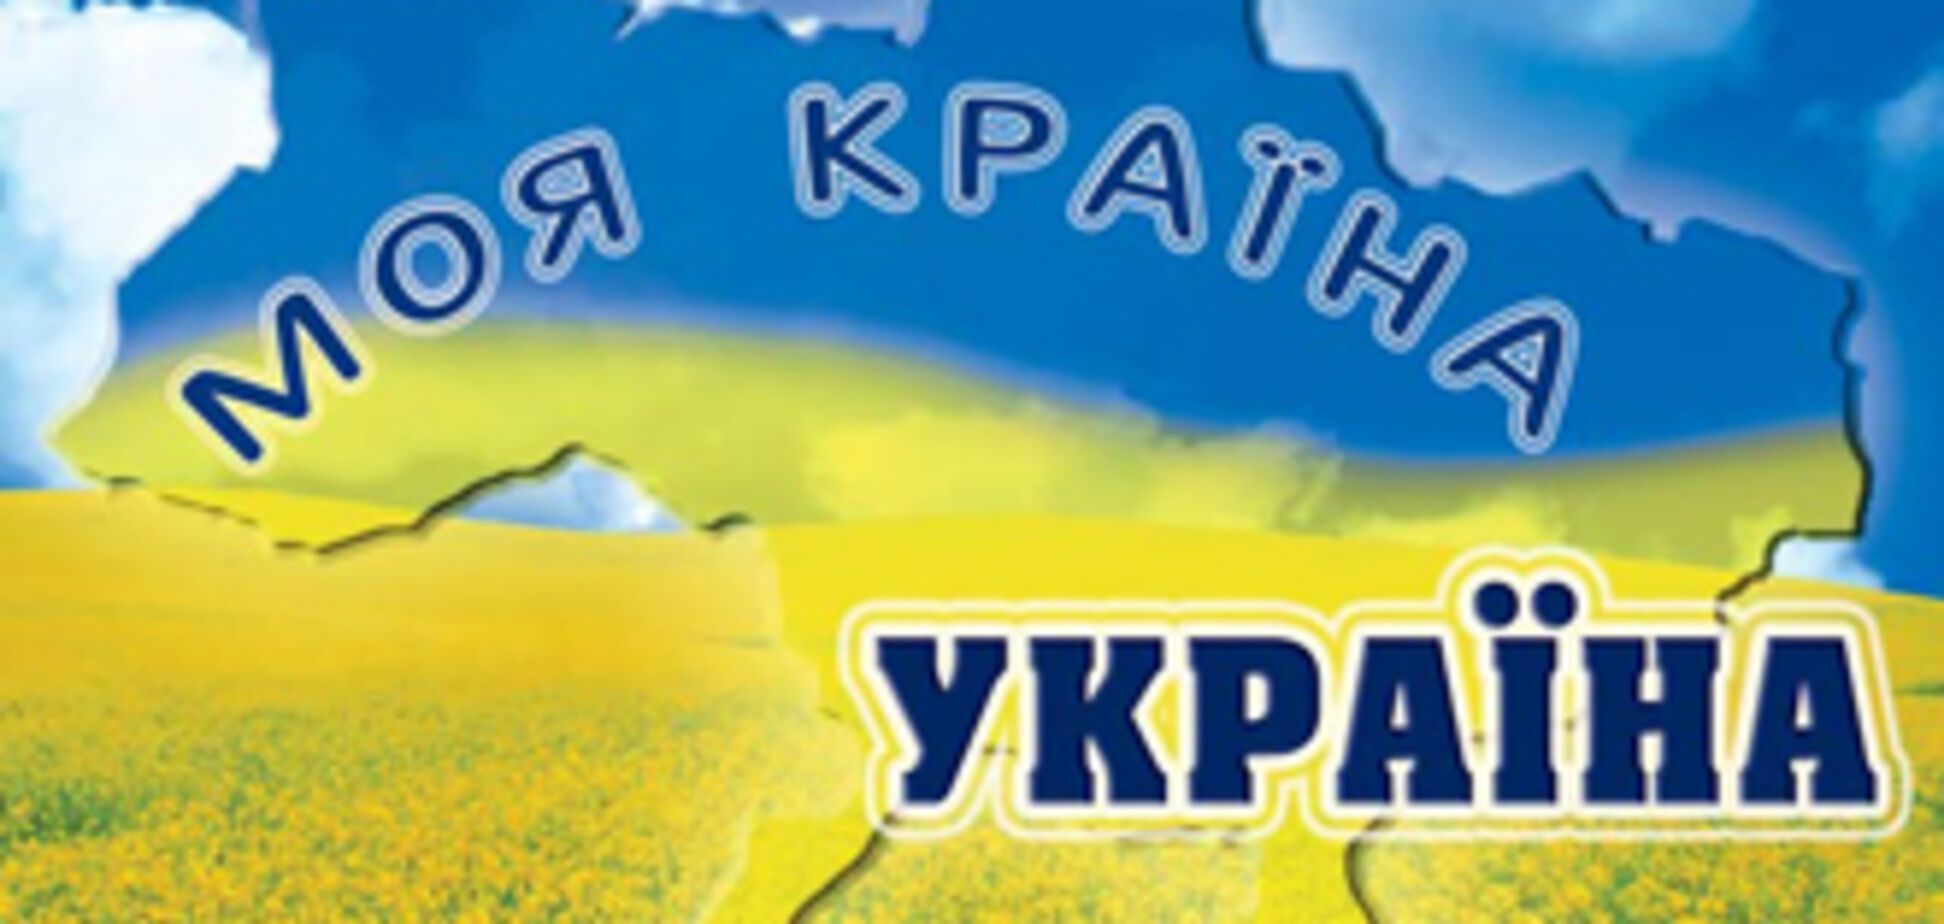 МИД потратит 9 миллионов на рекламу Украины